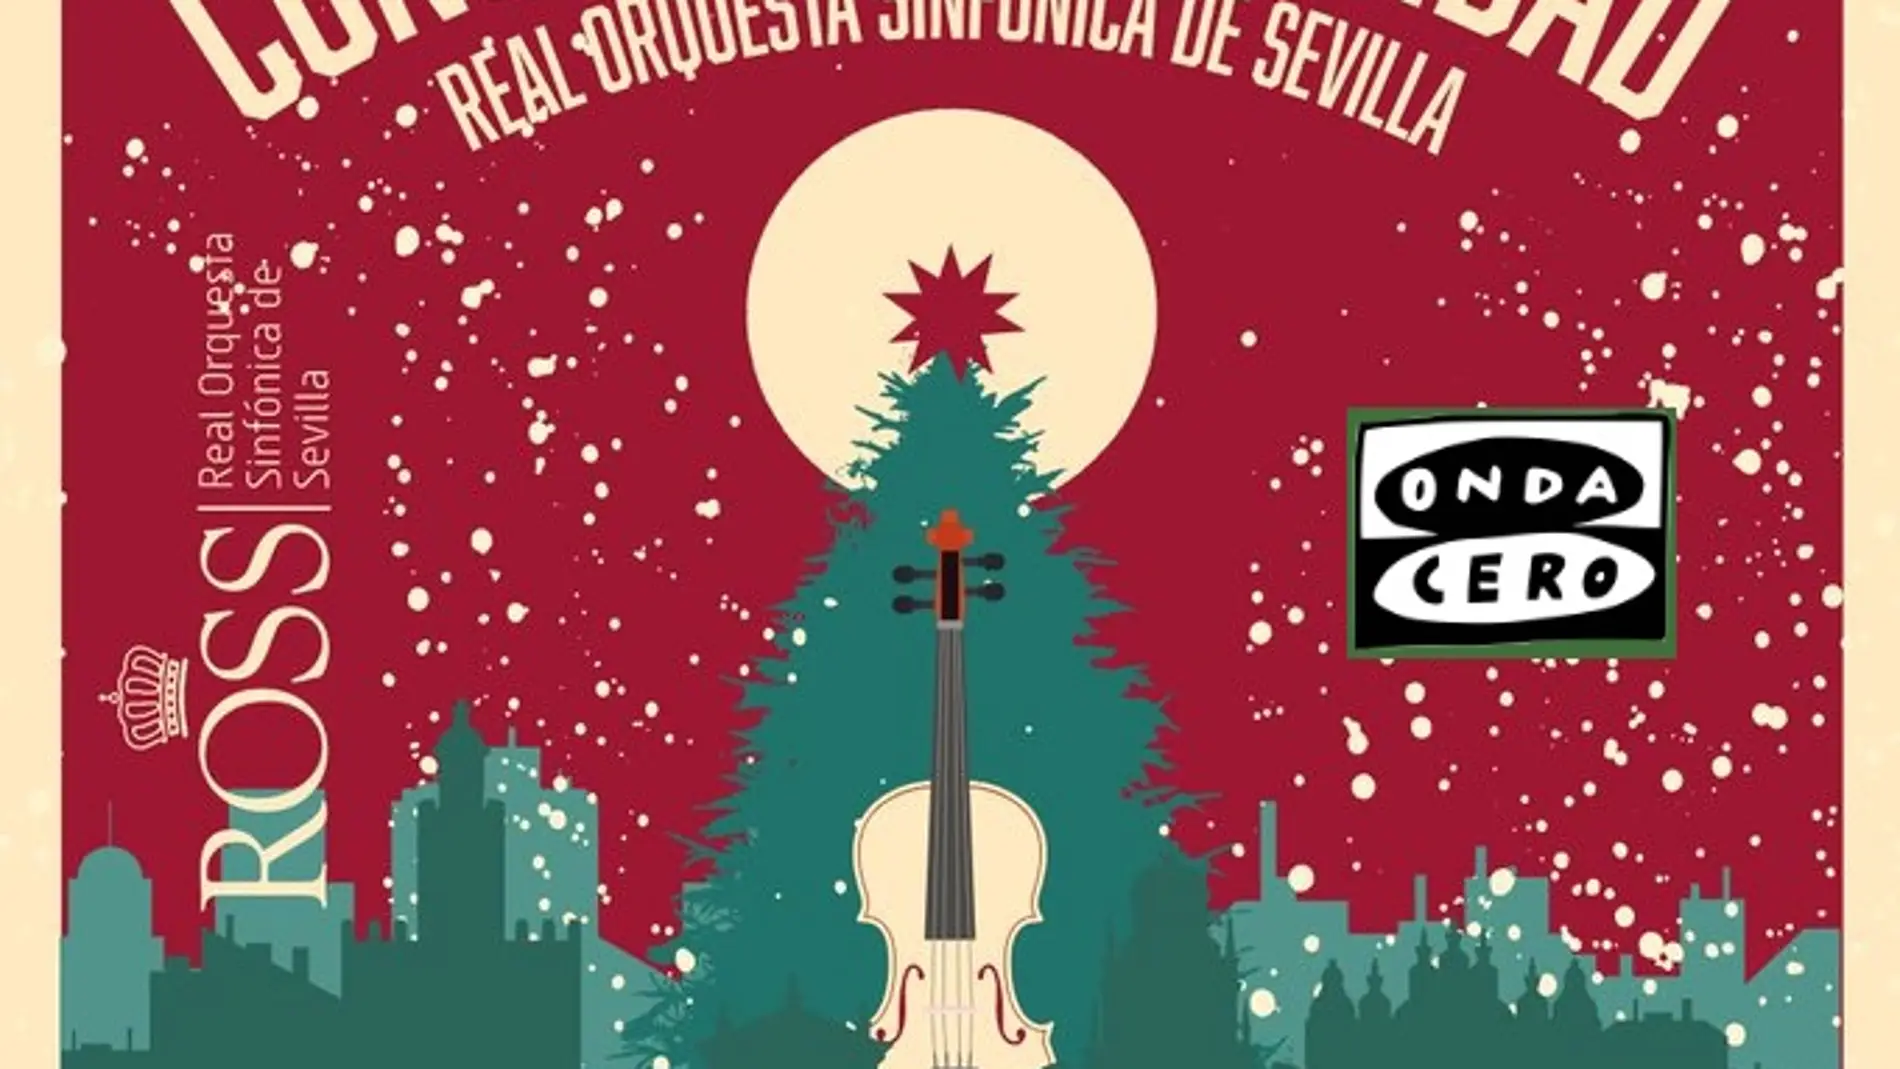 Onda Cero Sevilla patrocina por tercer año consecutivo el concierto de Navidad de la ROSS en el Teatro de la Maestranza